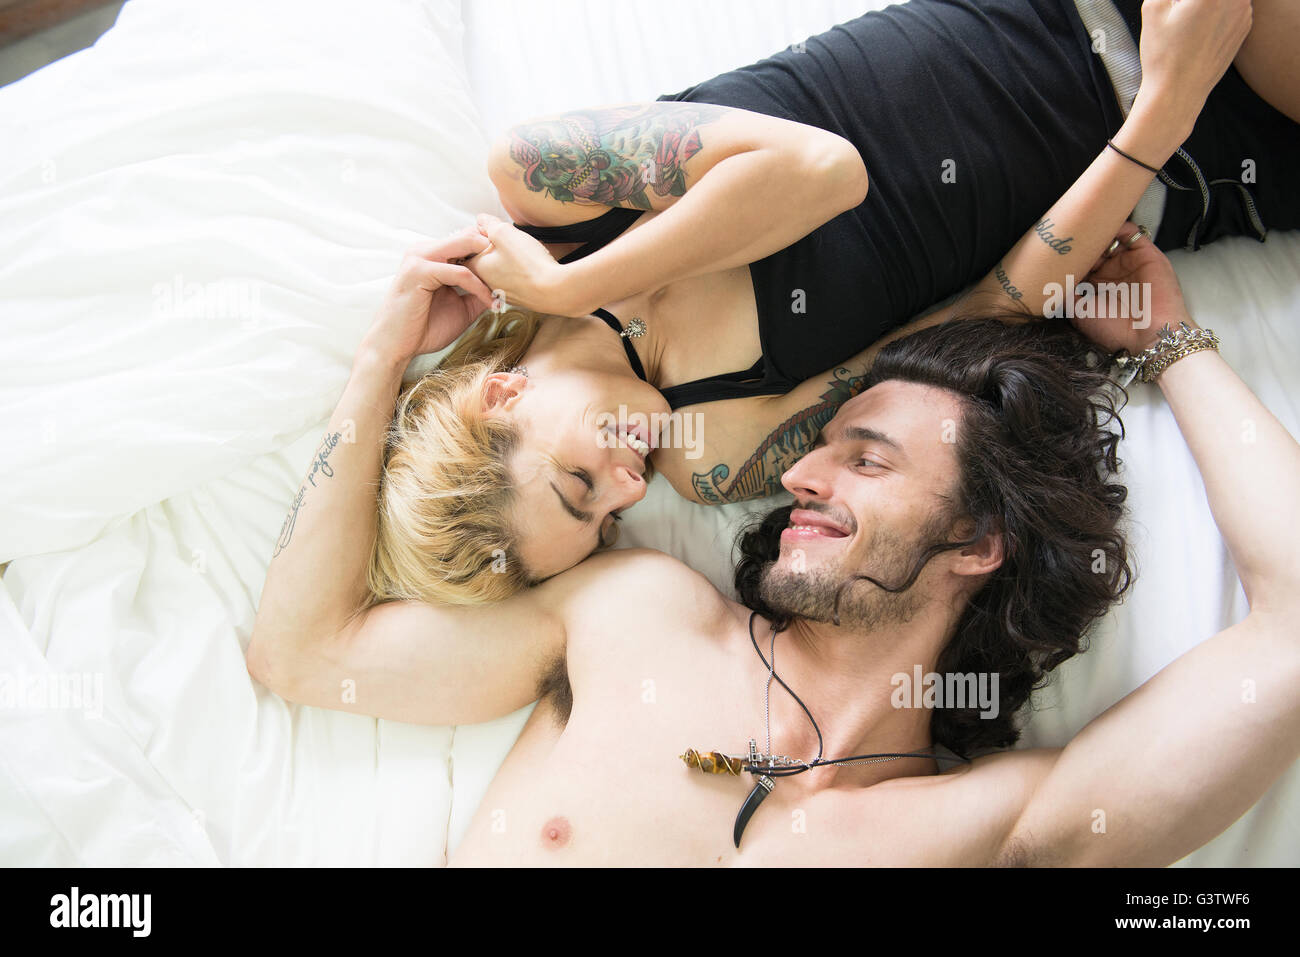 Eine coole junge Tätowierte Paar gemeinsam auf einem Bett liegend. Stockfoto